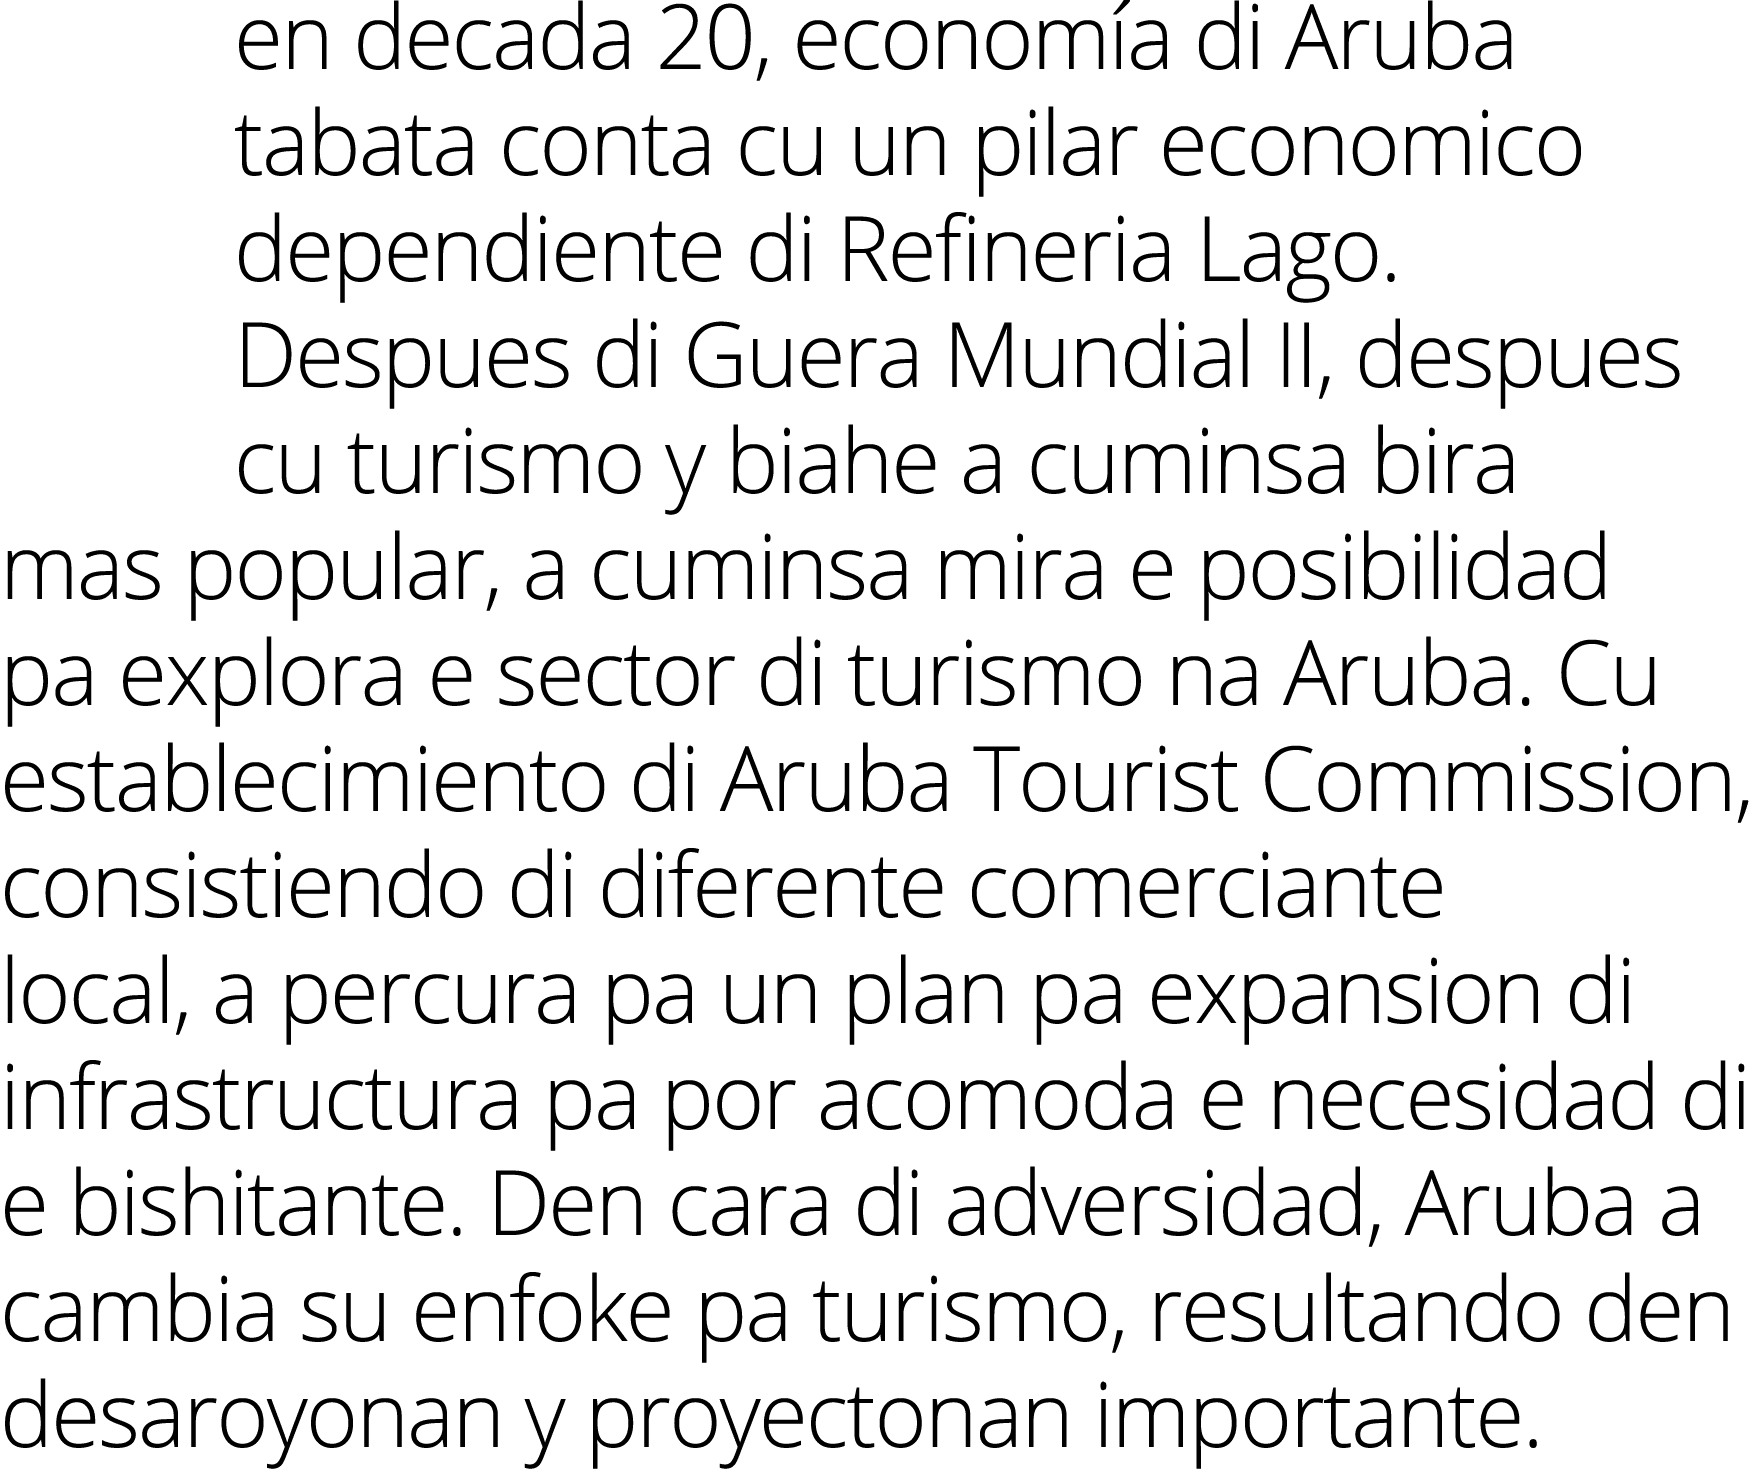 en decada 20, economía di Aruba tabata conta cu un pilar economico dependiente di Refineria Lago  Despues di Guera Mu   